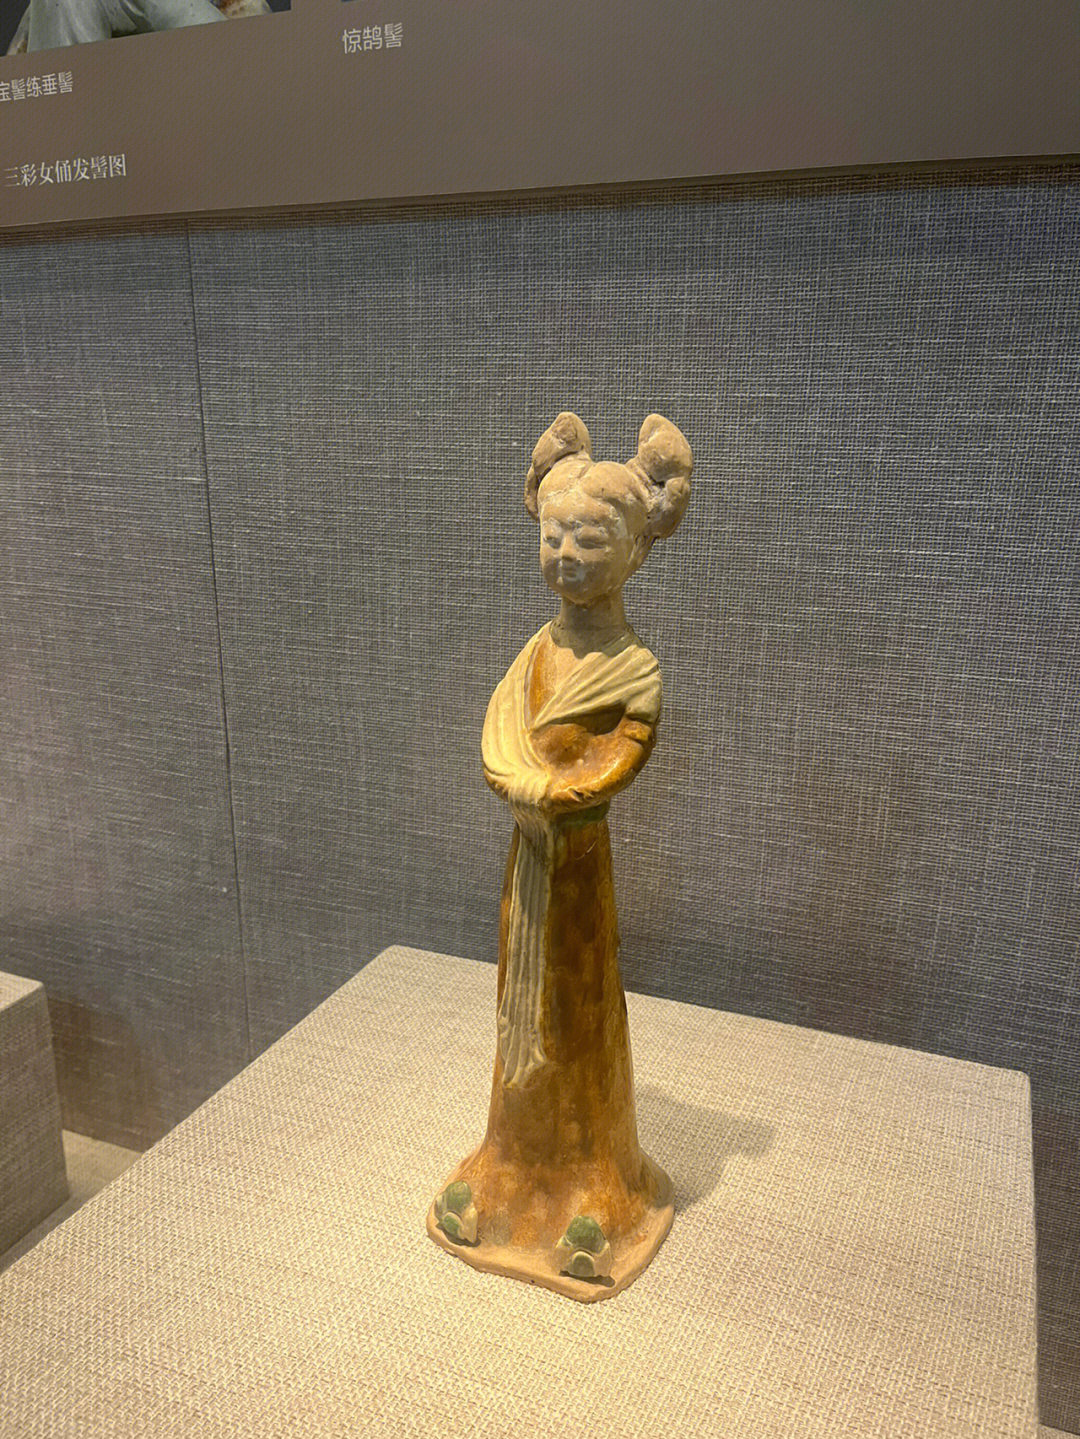 洛阳旅行有各种唐三彩仕女俑的洛阳博物馆